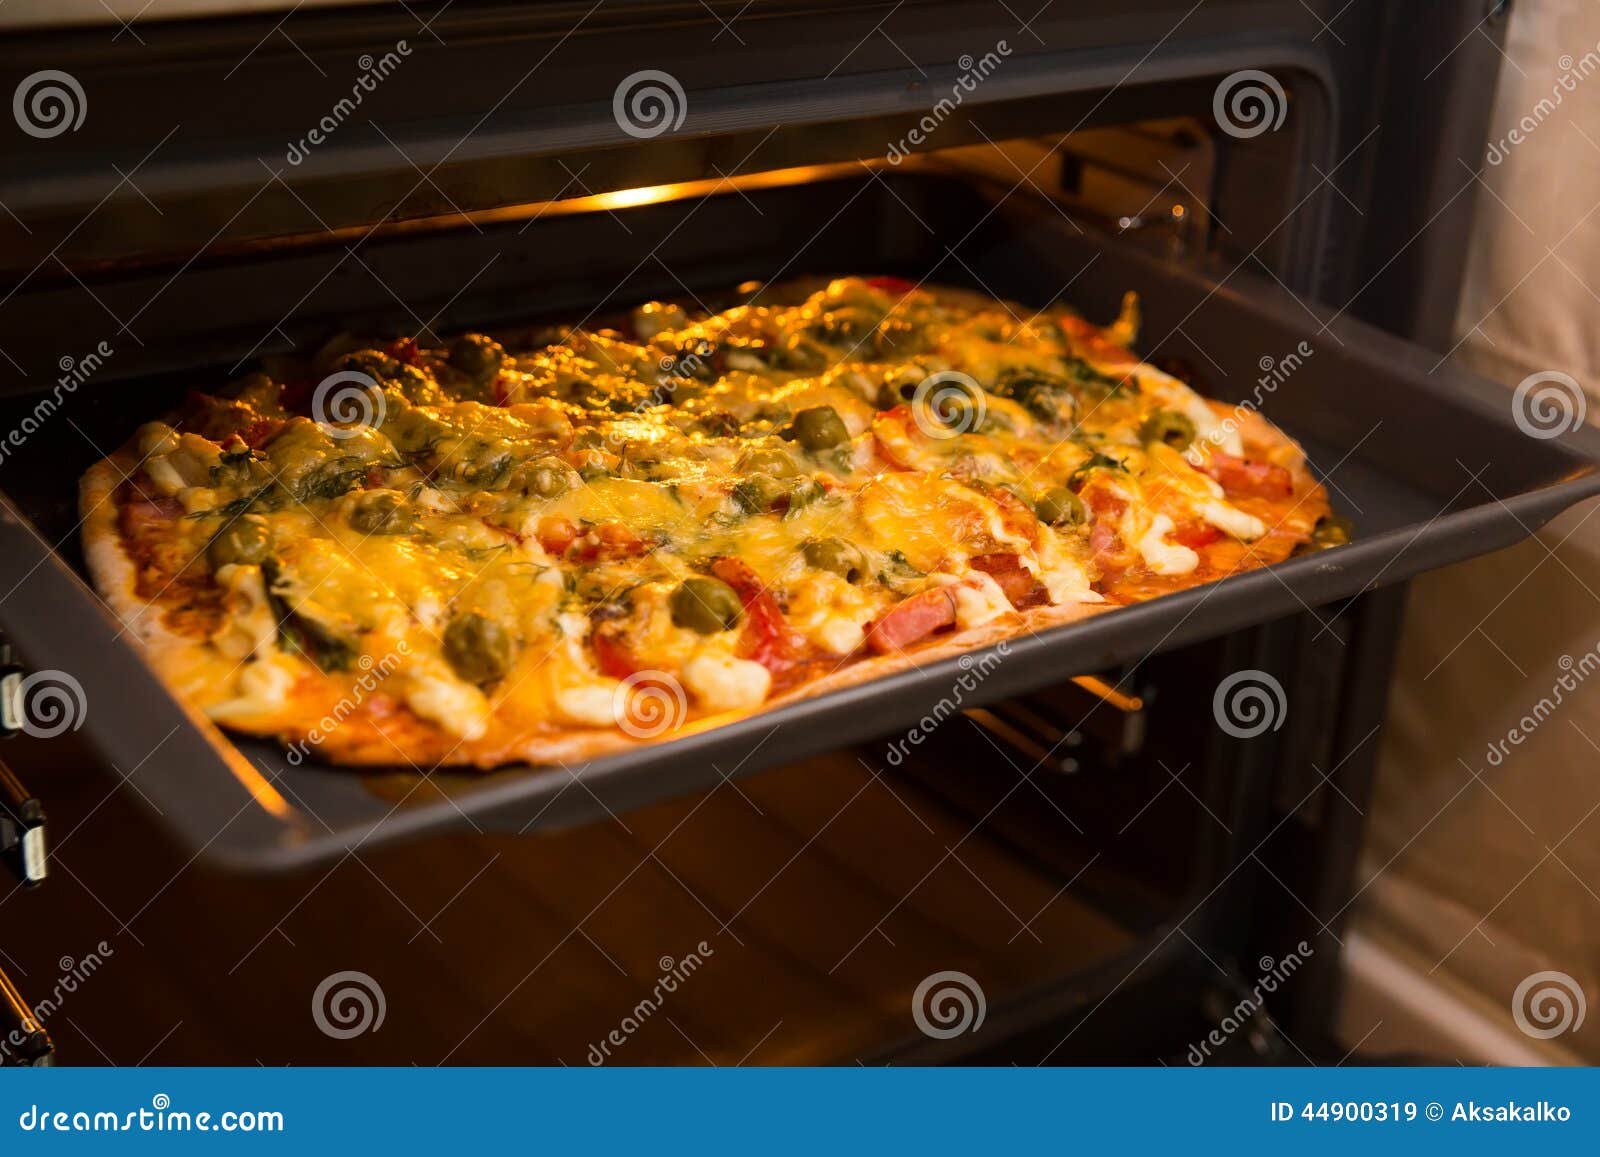 что нужно на домашнюю пиццу в духовке фото 9